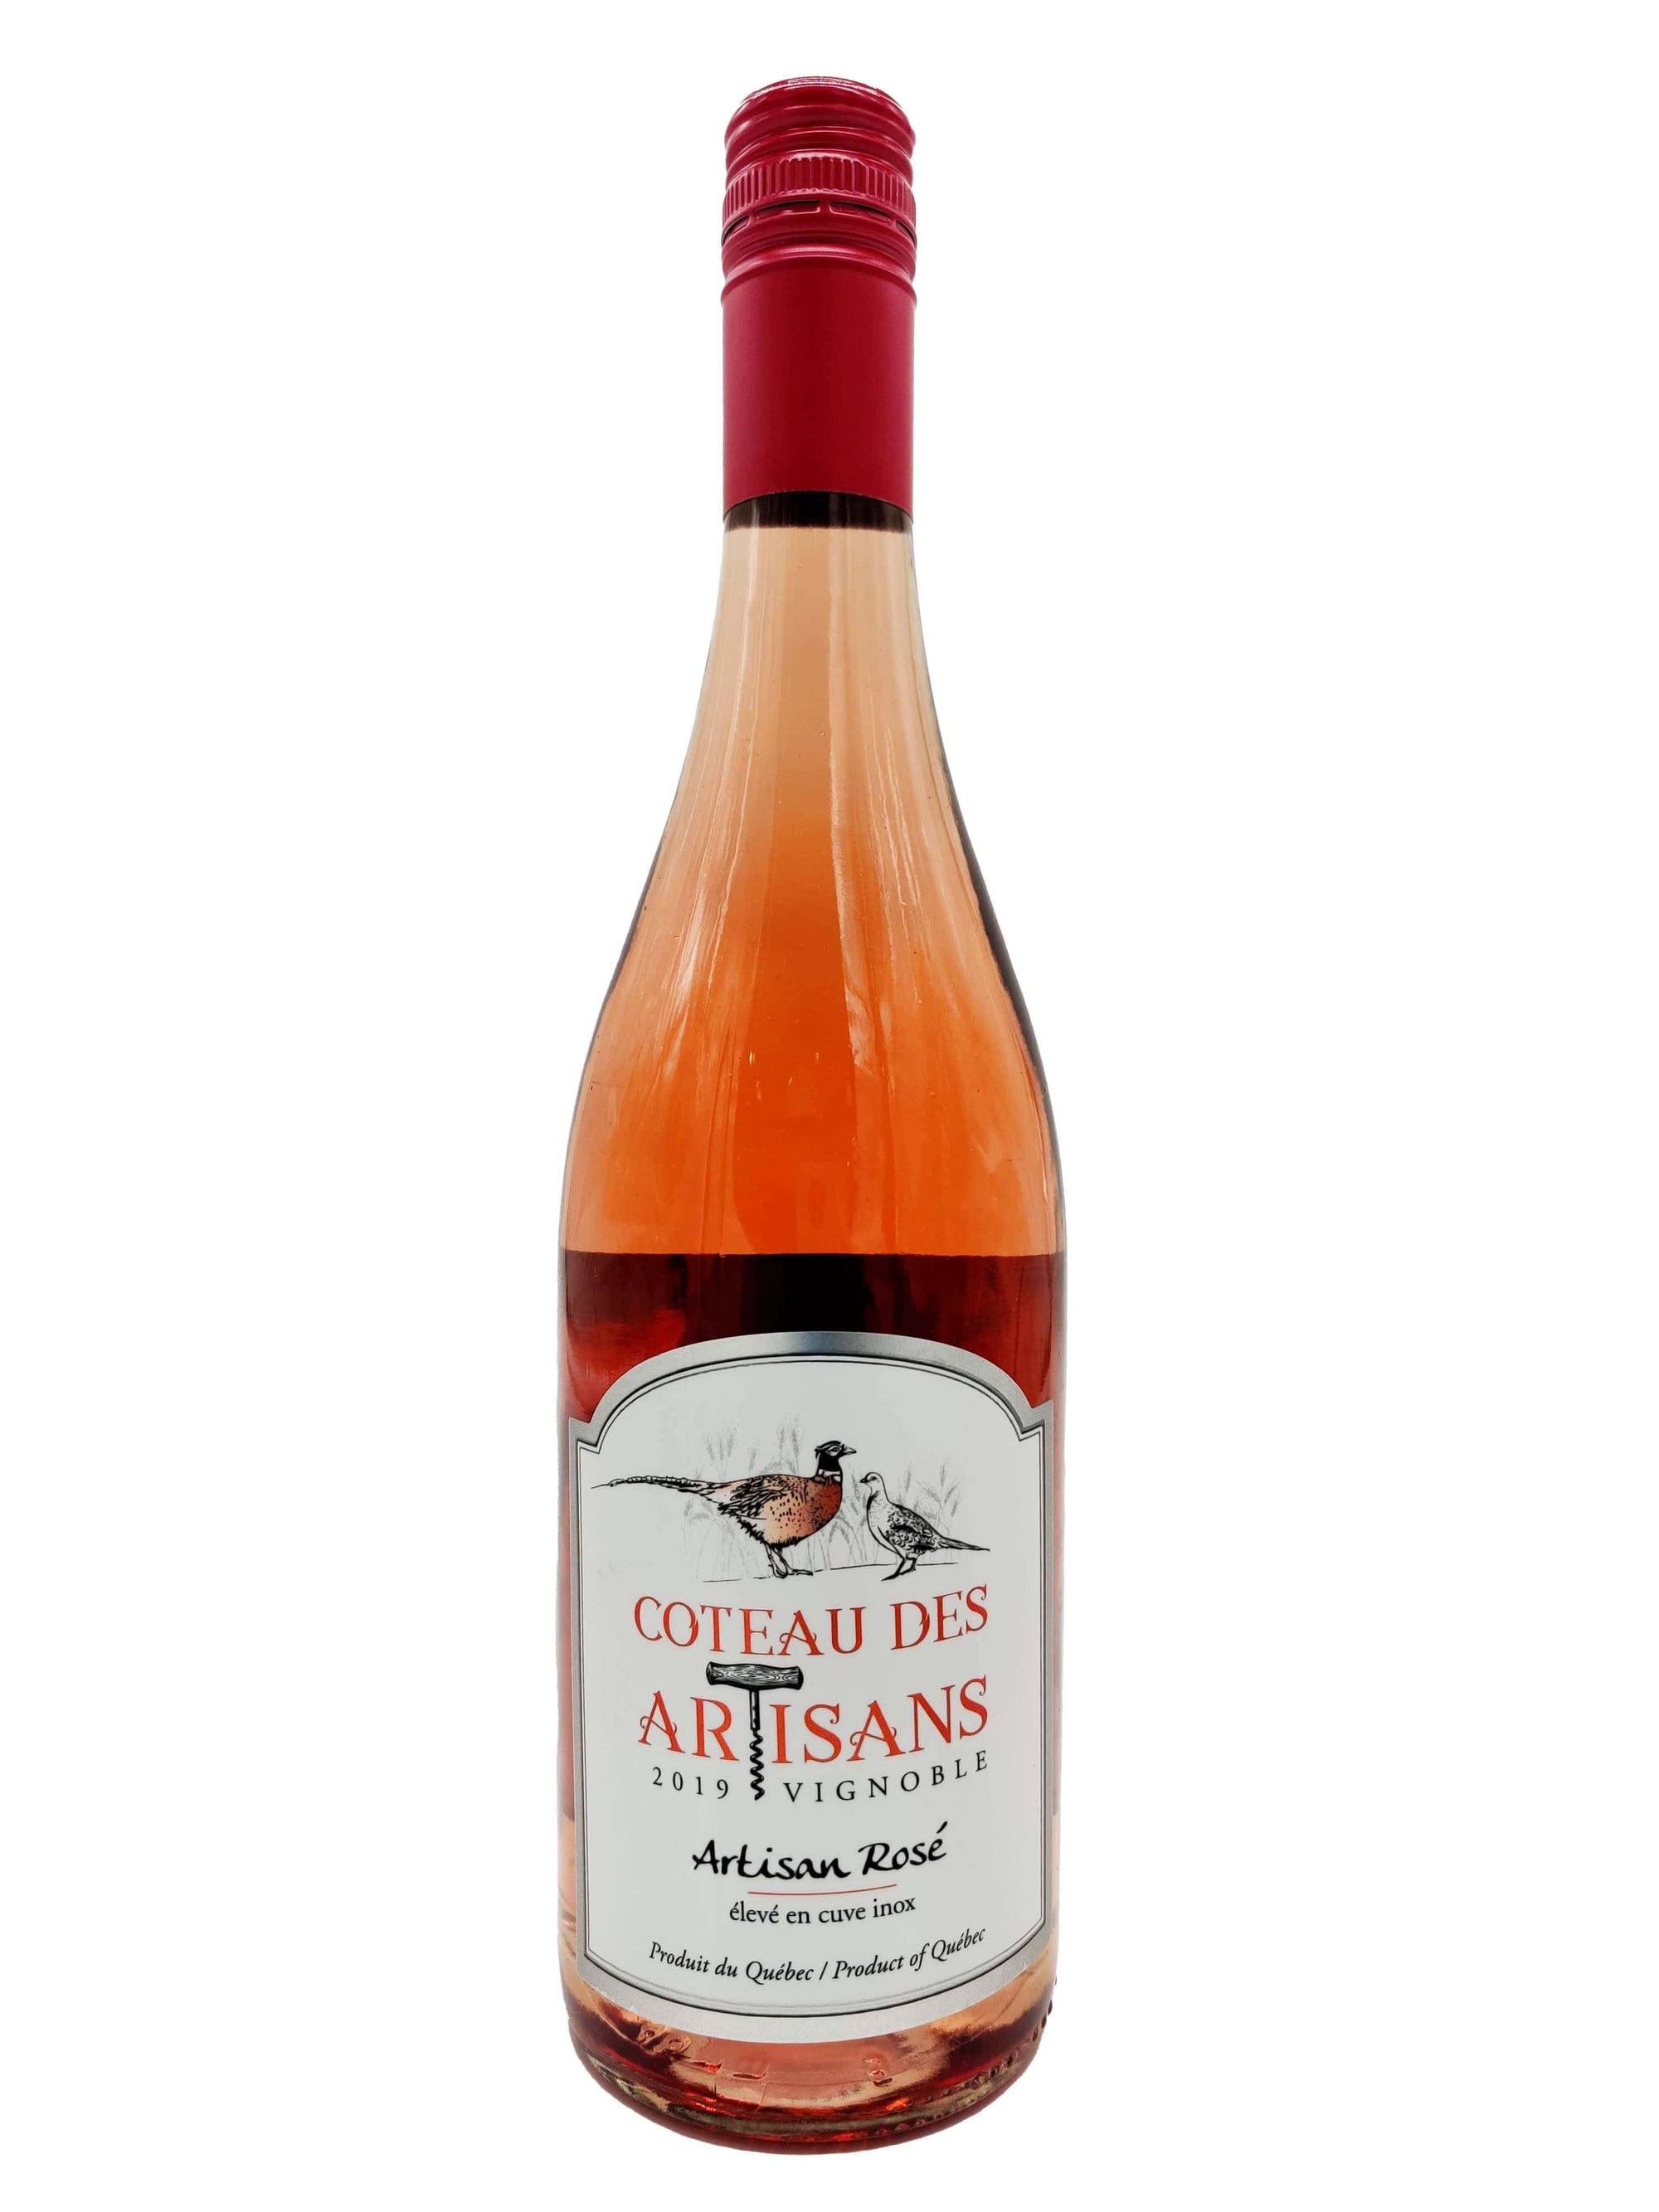 Coteau des Artisans vin Artisan Rosé - Vin rosé du Coteau des Artisans